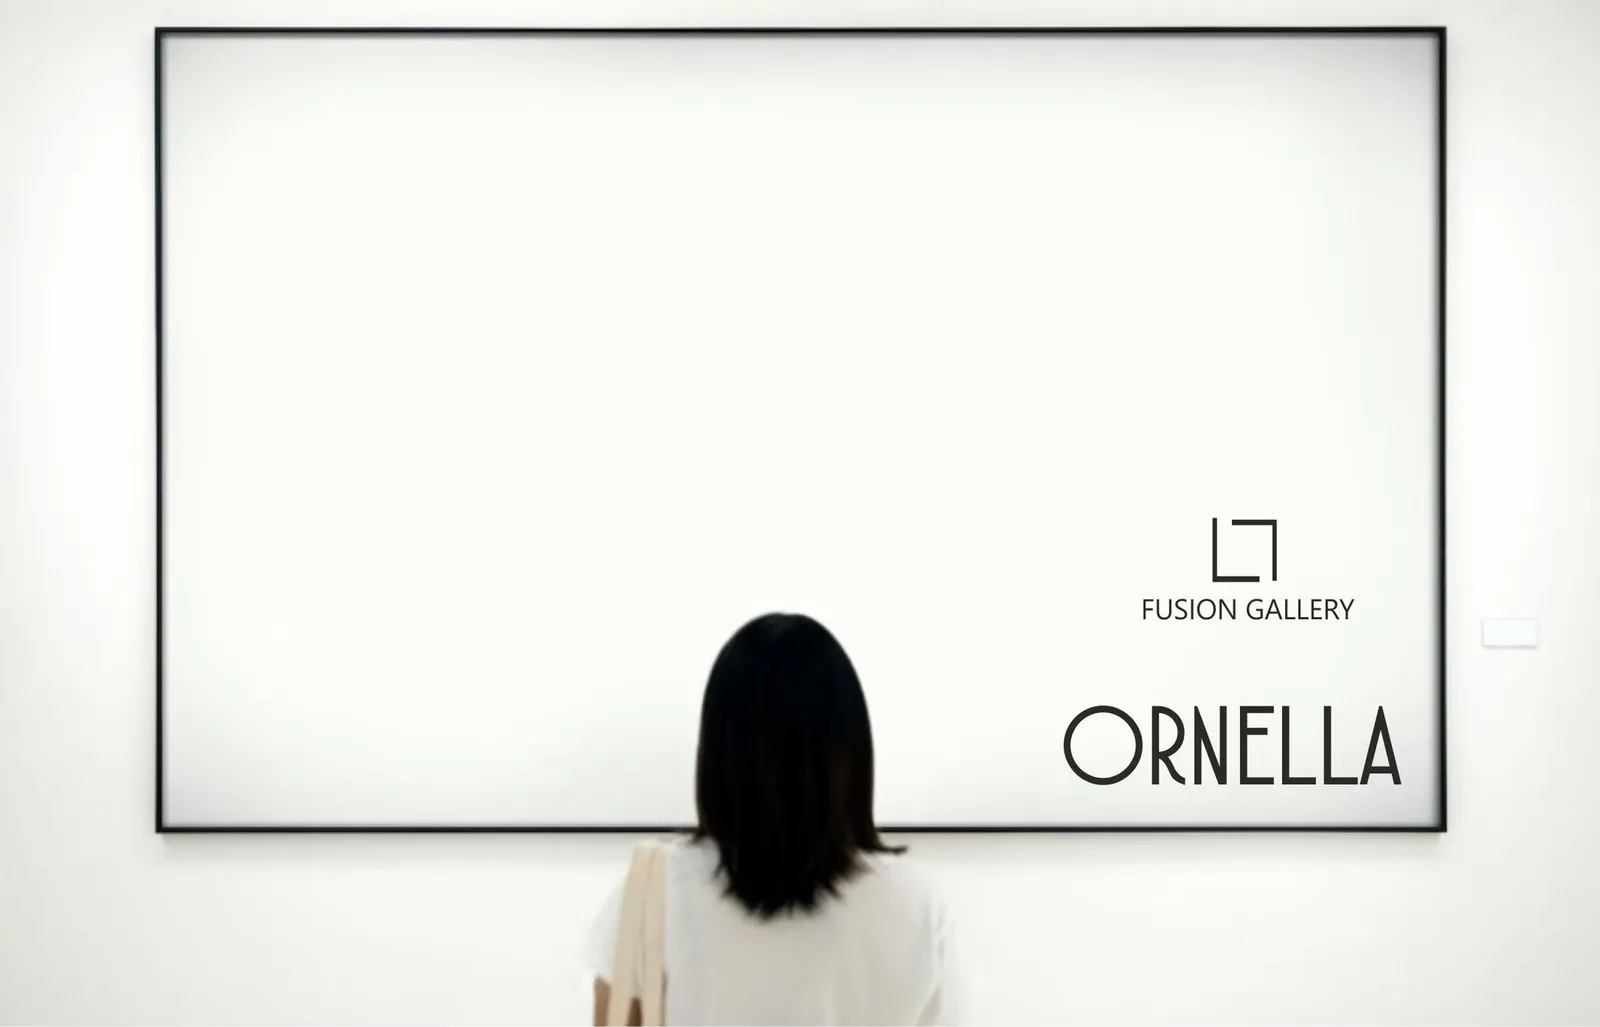 Ornella Fusion Gallery